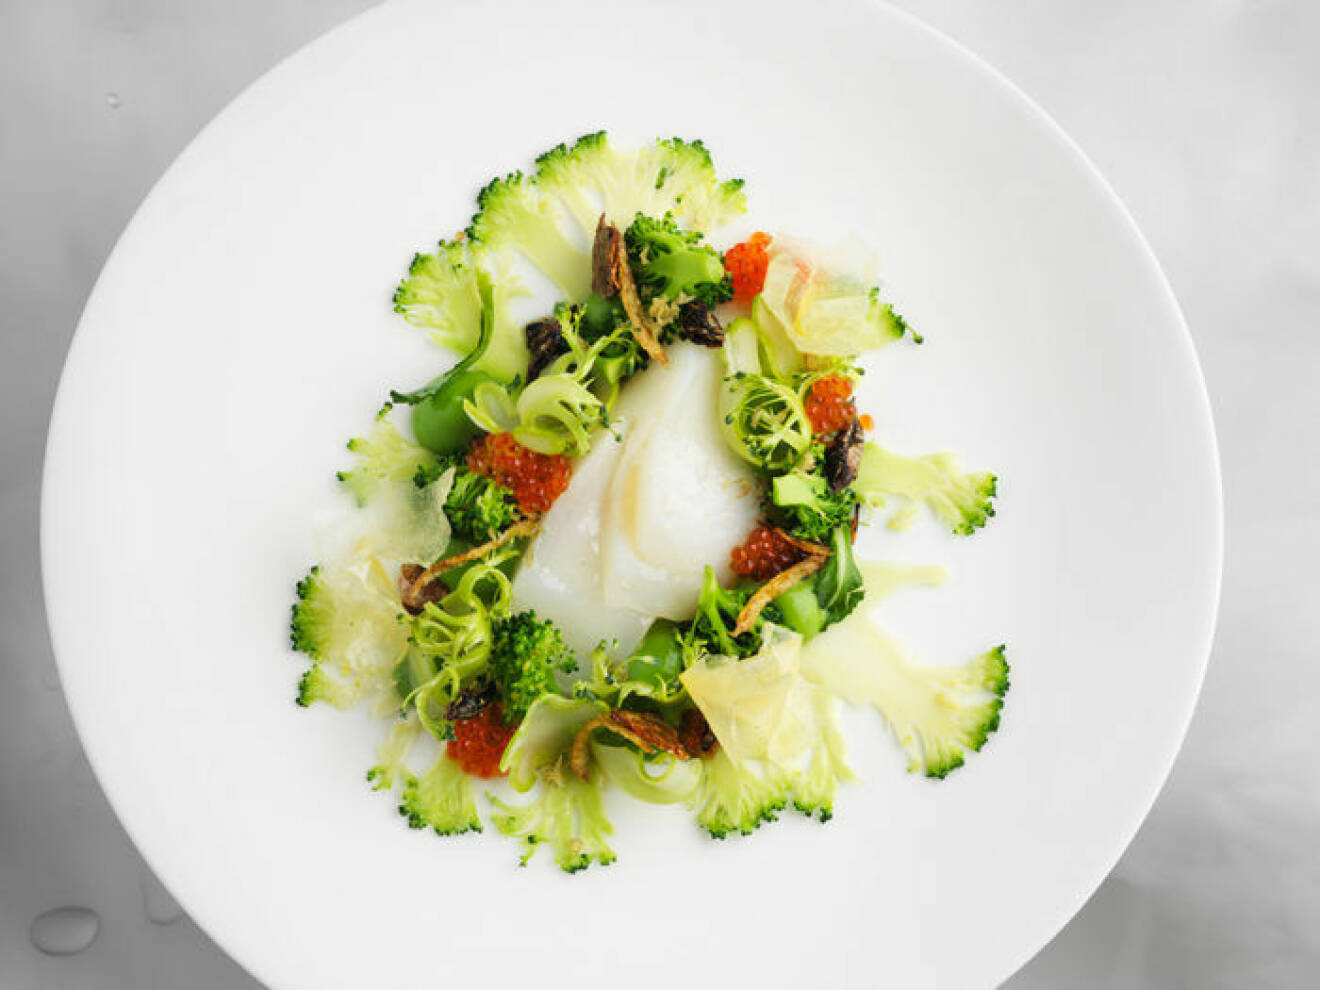 Torsk, broccoli – och gräshoppor.